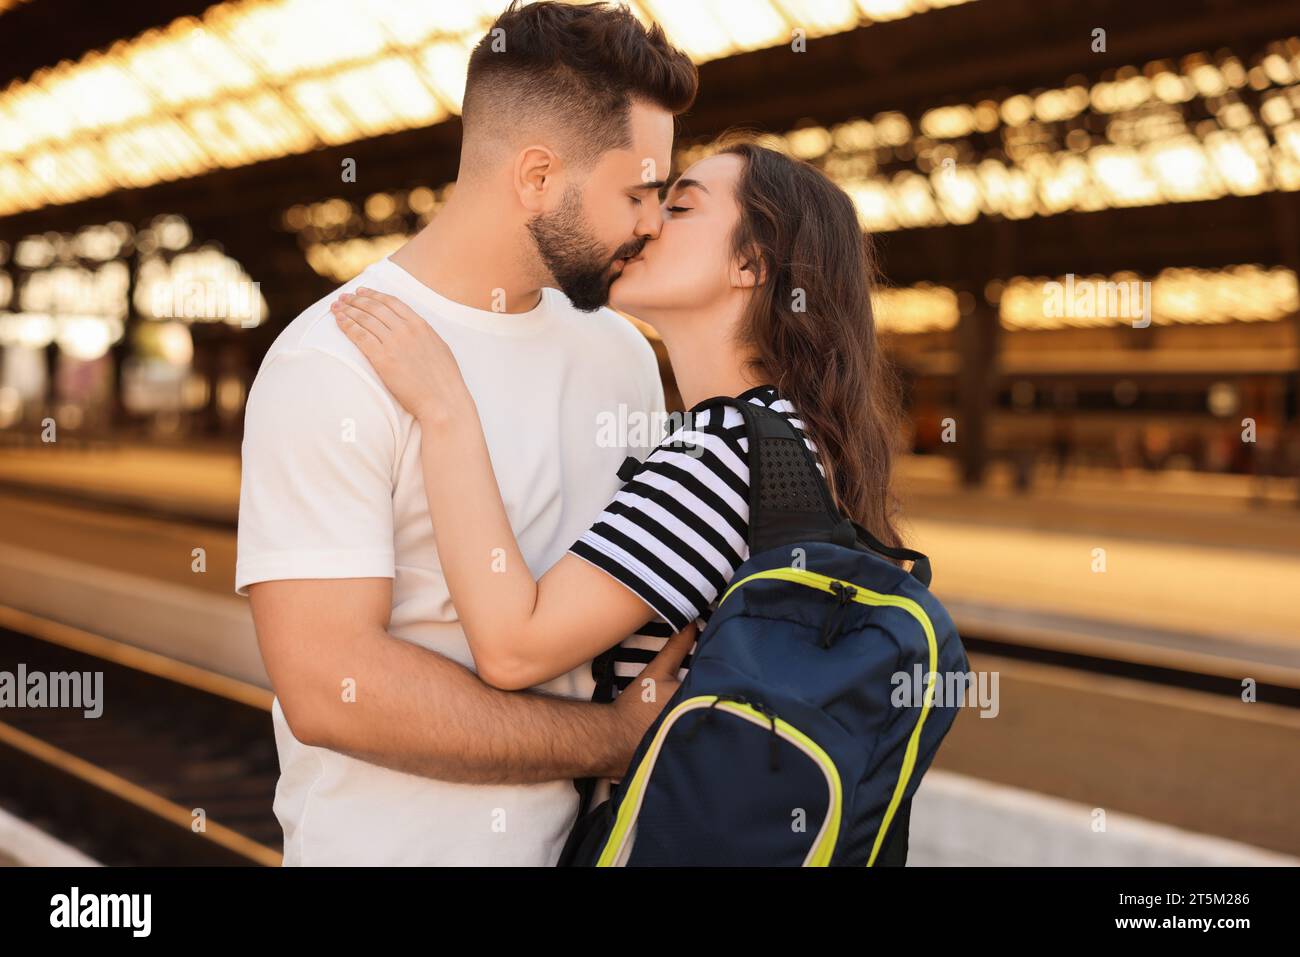 Relation longue distance. Beau couple s'embrassant sur le quai de la gare Banque D'Images